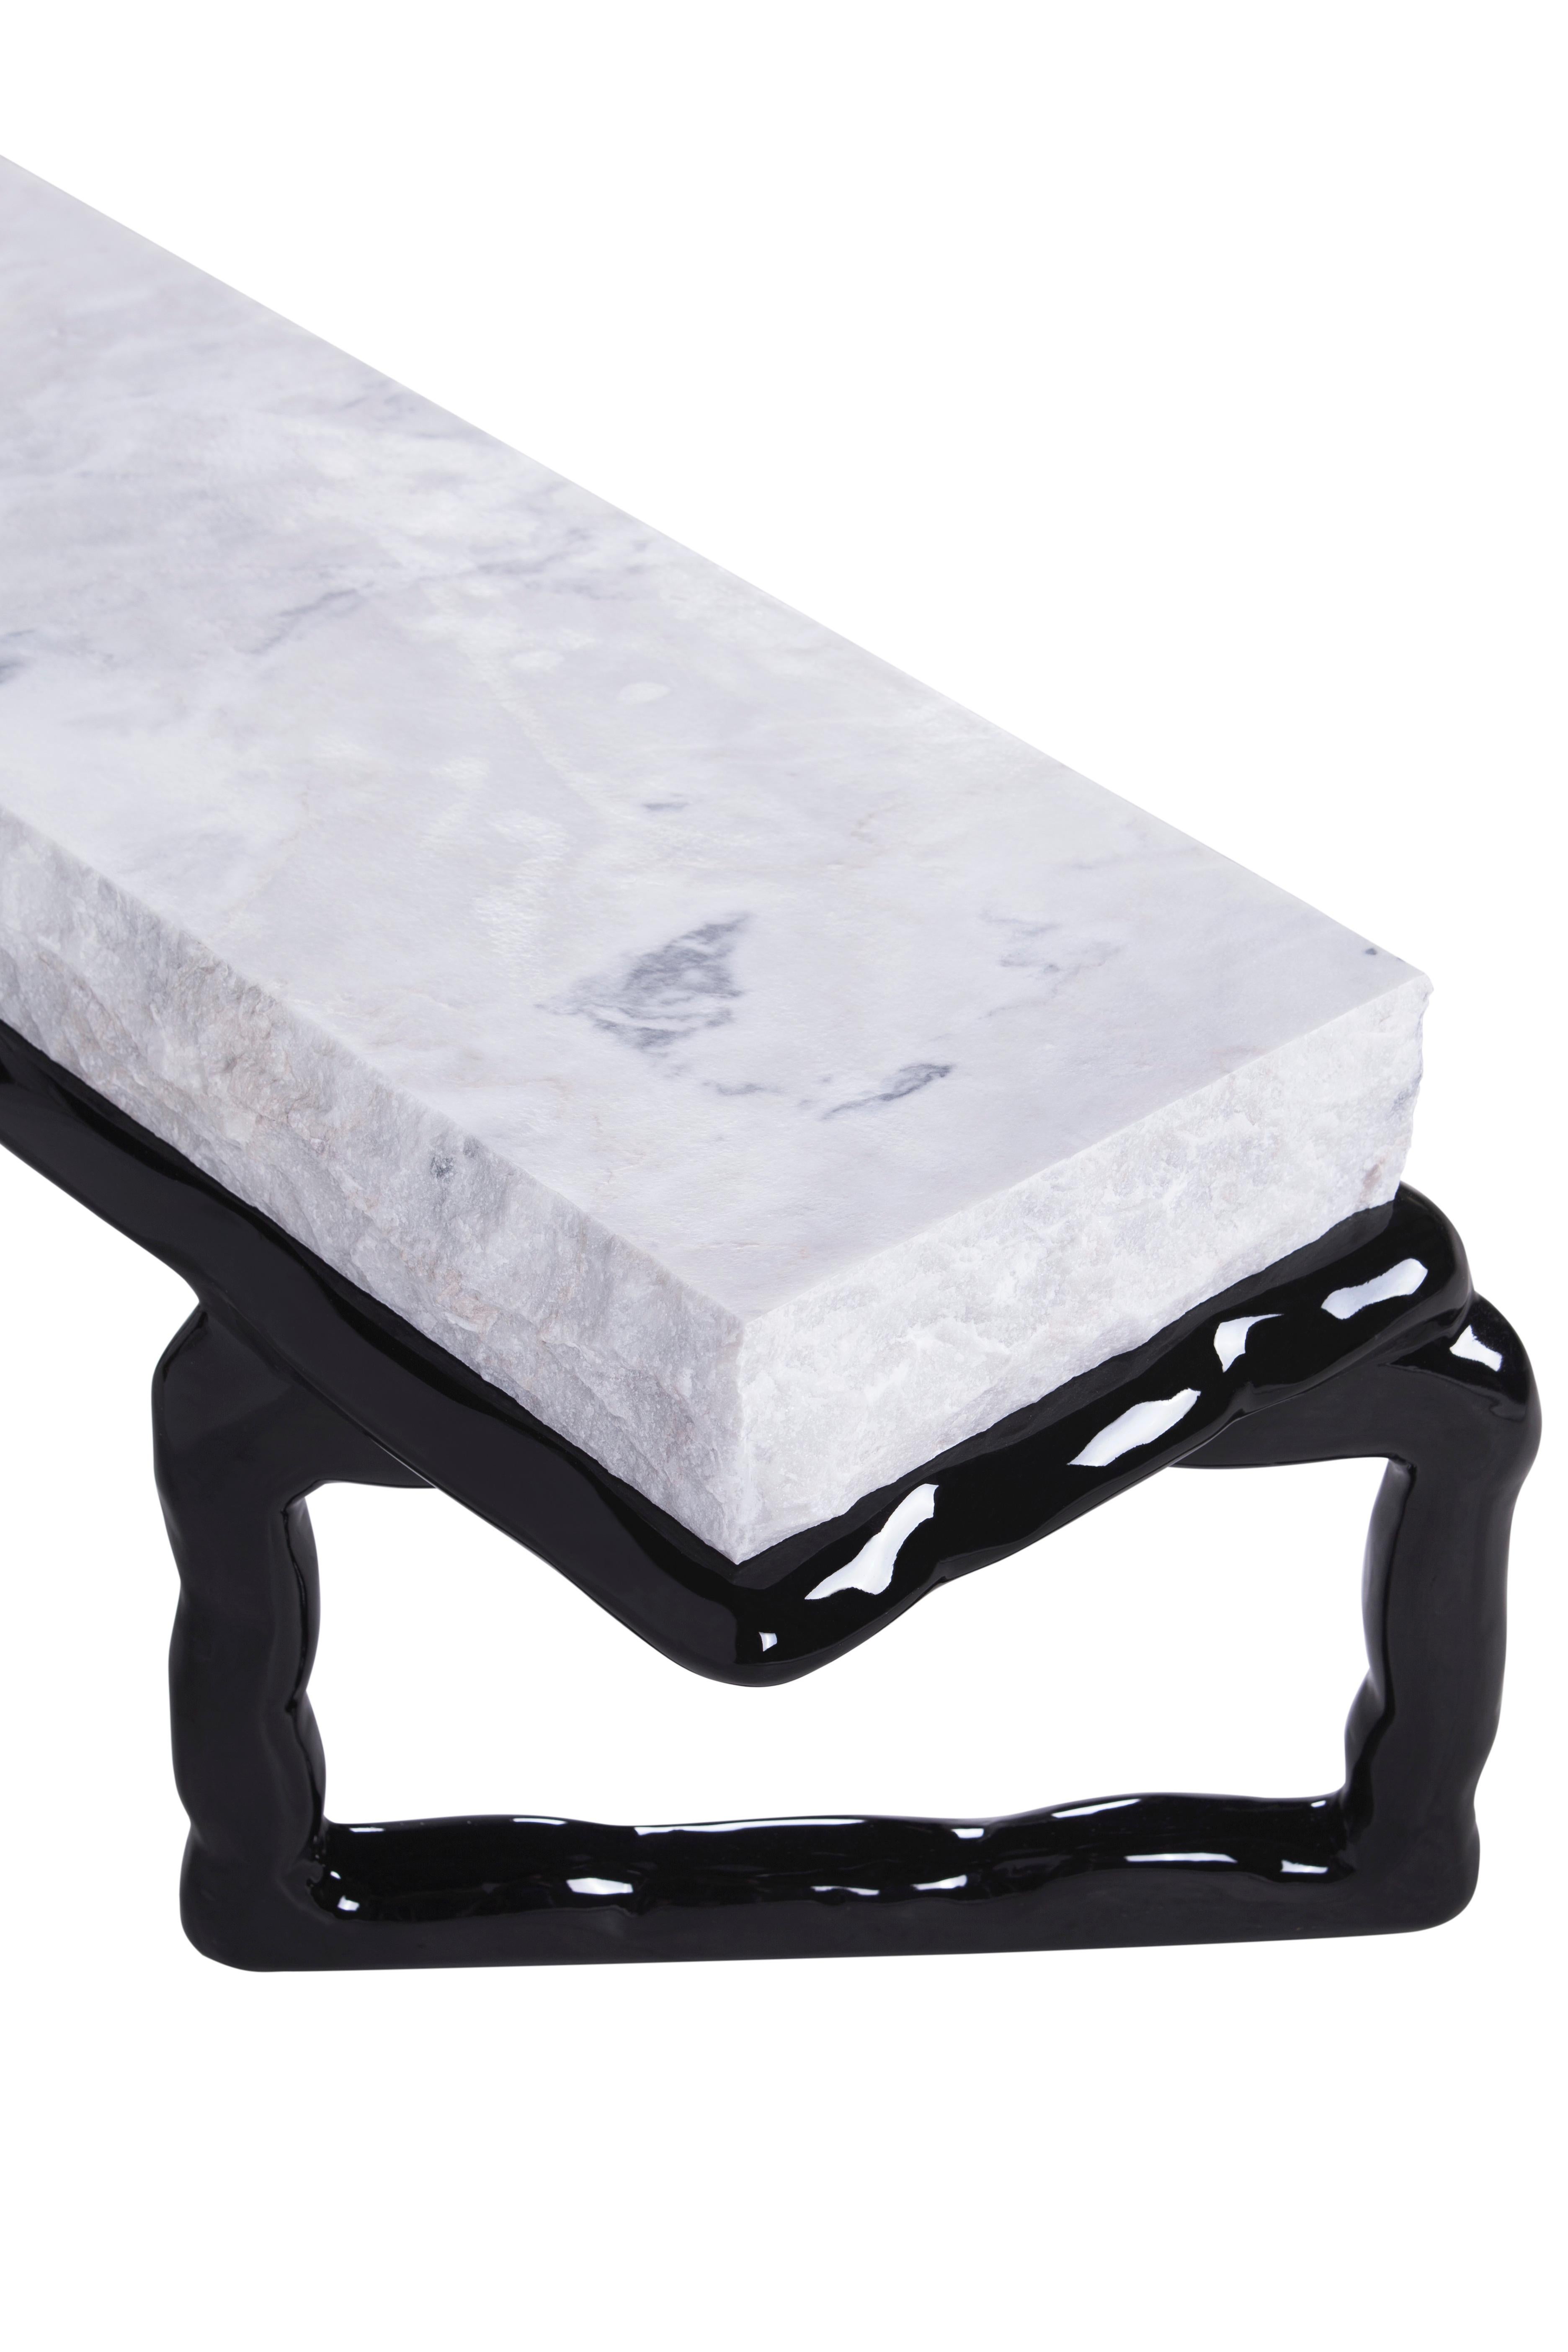 Fait main Table basse en pierre Art Déco Calacatta en marbre, fabriquée à la main au Portugal par Greenapple en vente